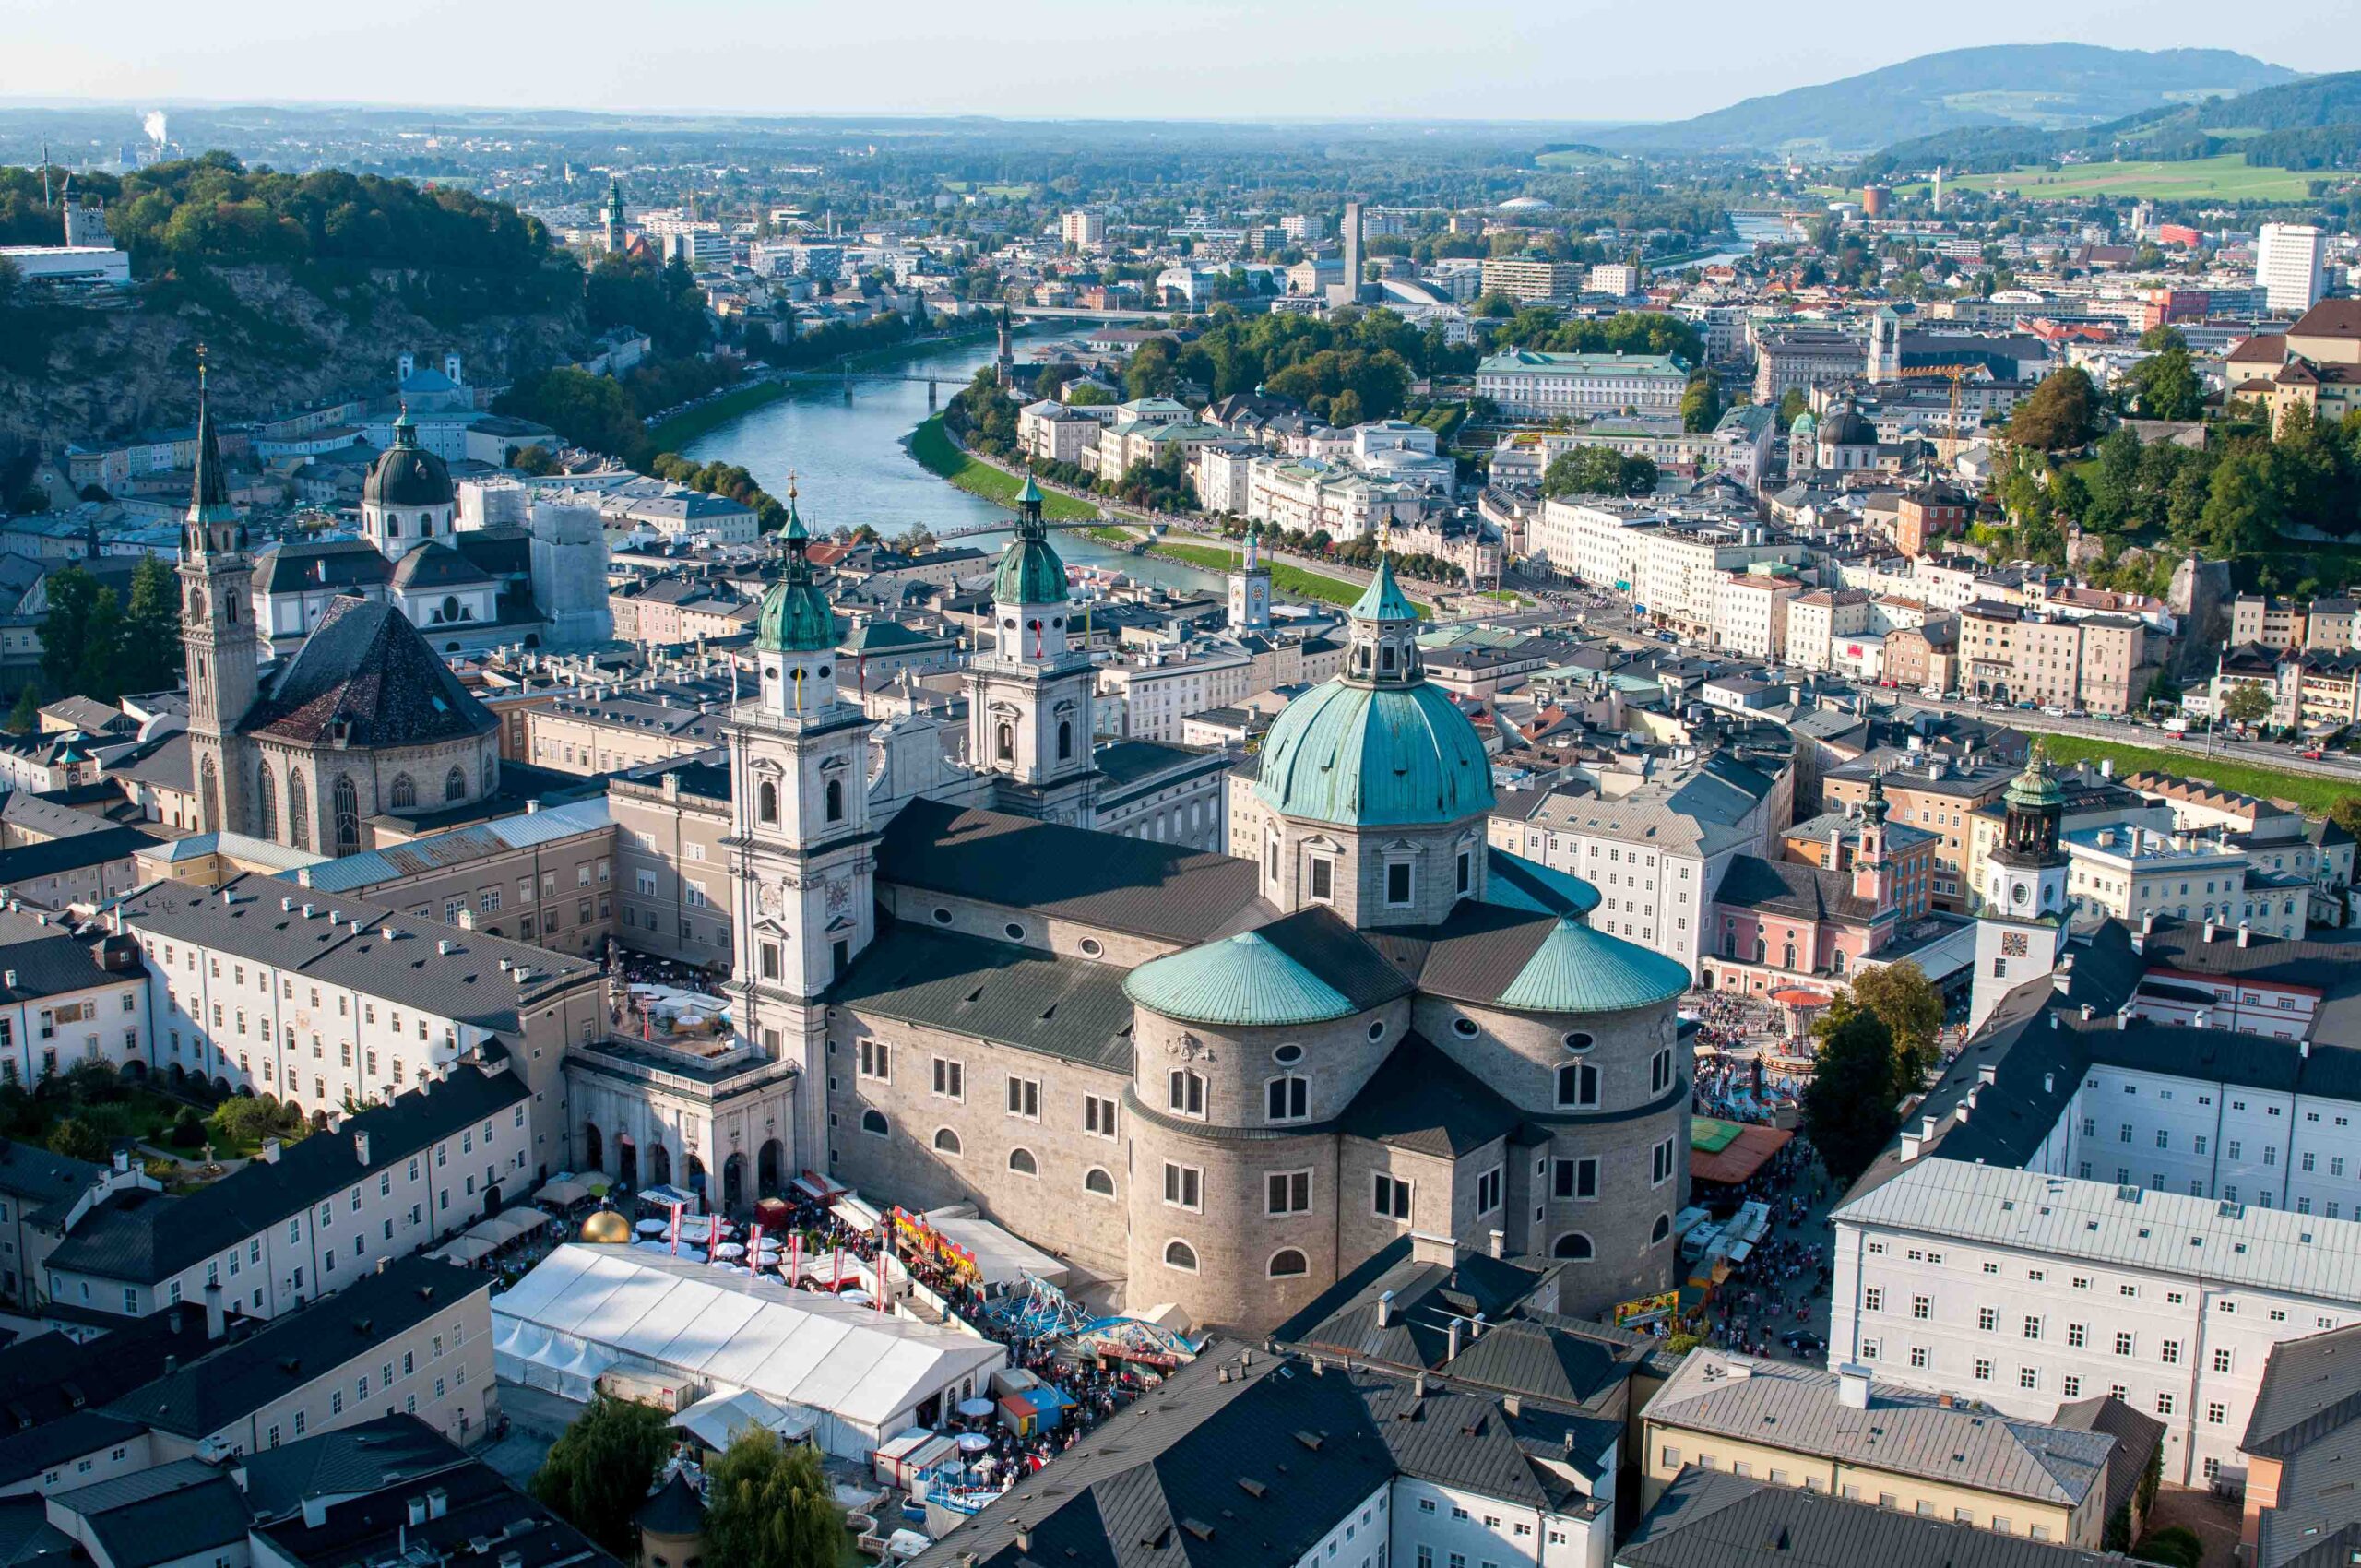 Blick auf die Salzburg Altstadt